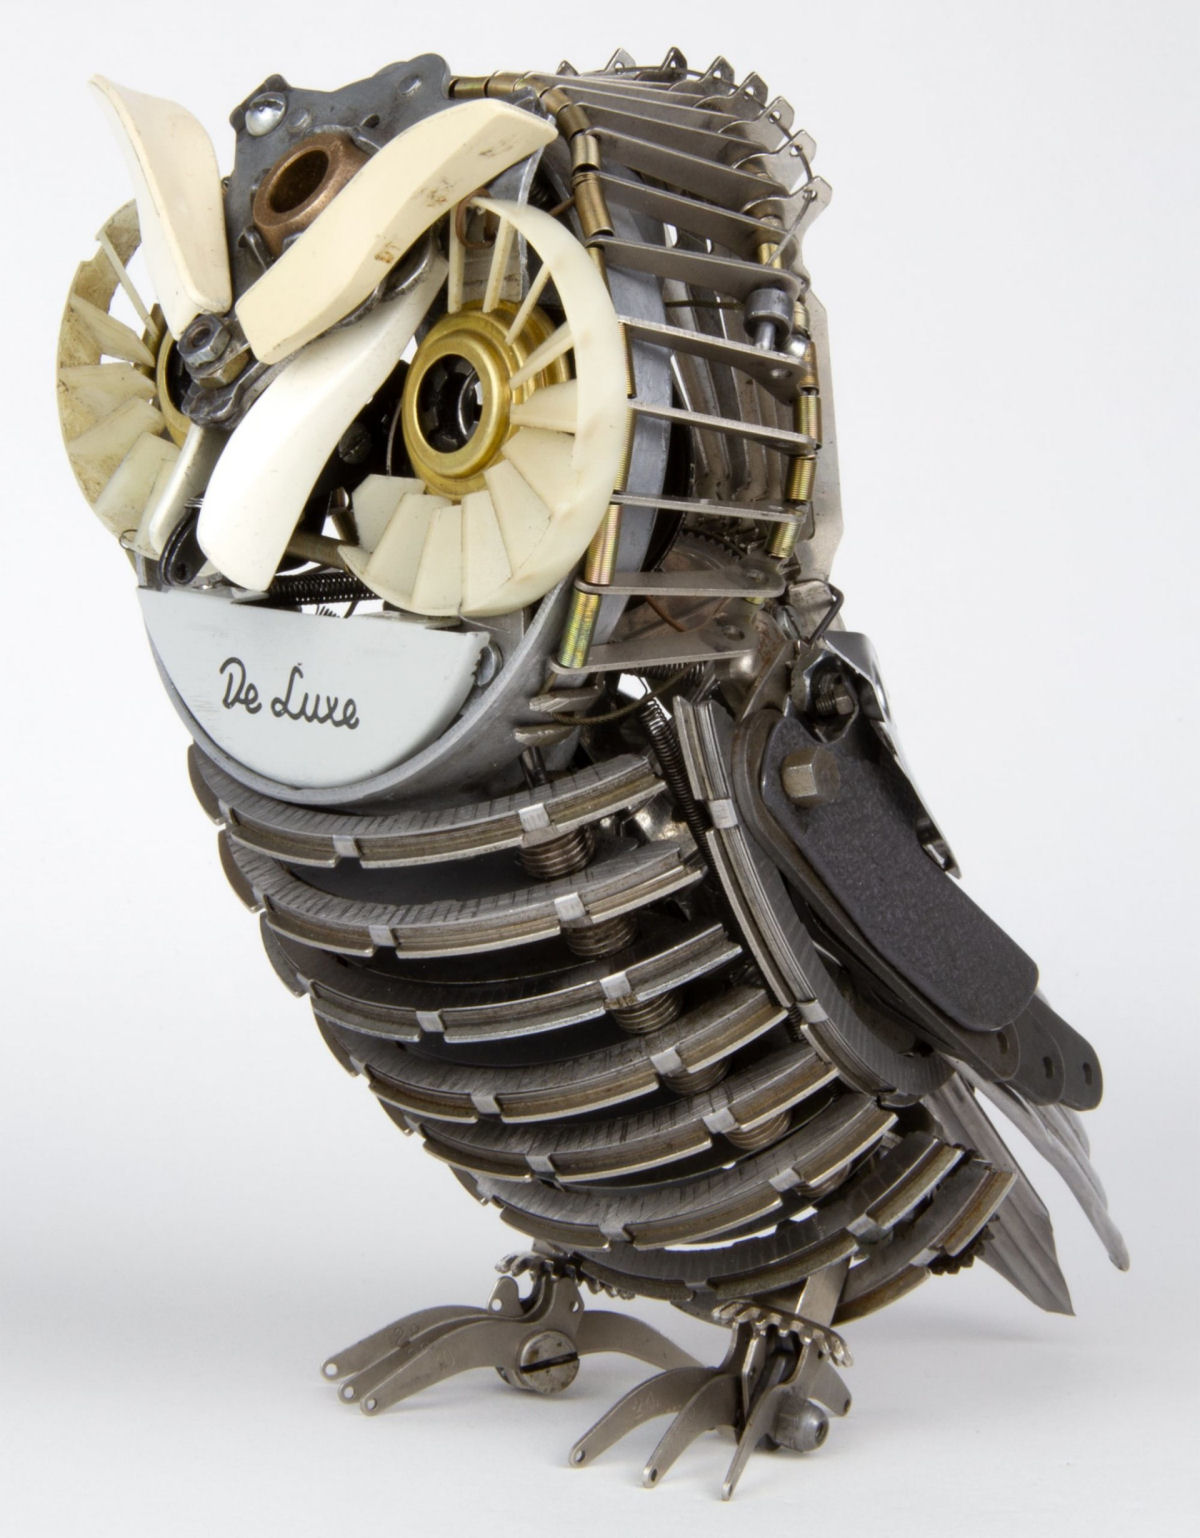 Sucata de máquinas de escrever ganham nova vida como incríveis esculturas de pássaros 02